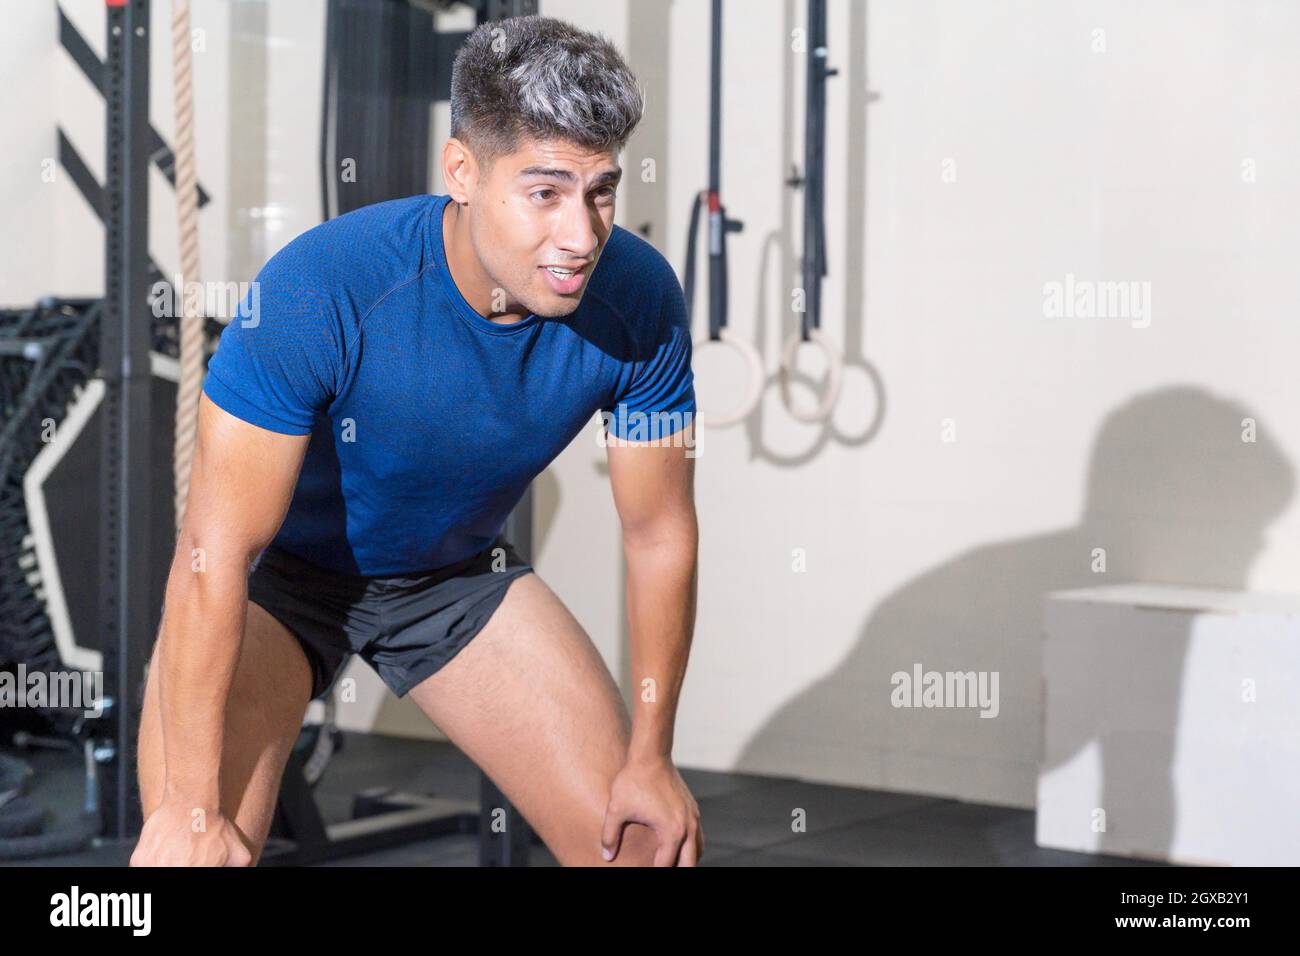 Forma a un hombre joven sudando después de una sesión de ejercicio en el gimnasio. Fotografías de alta calidad. Foto de stock